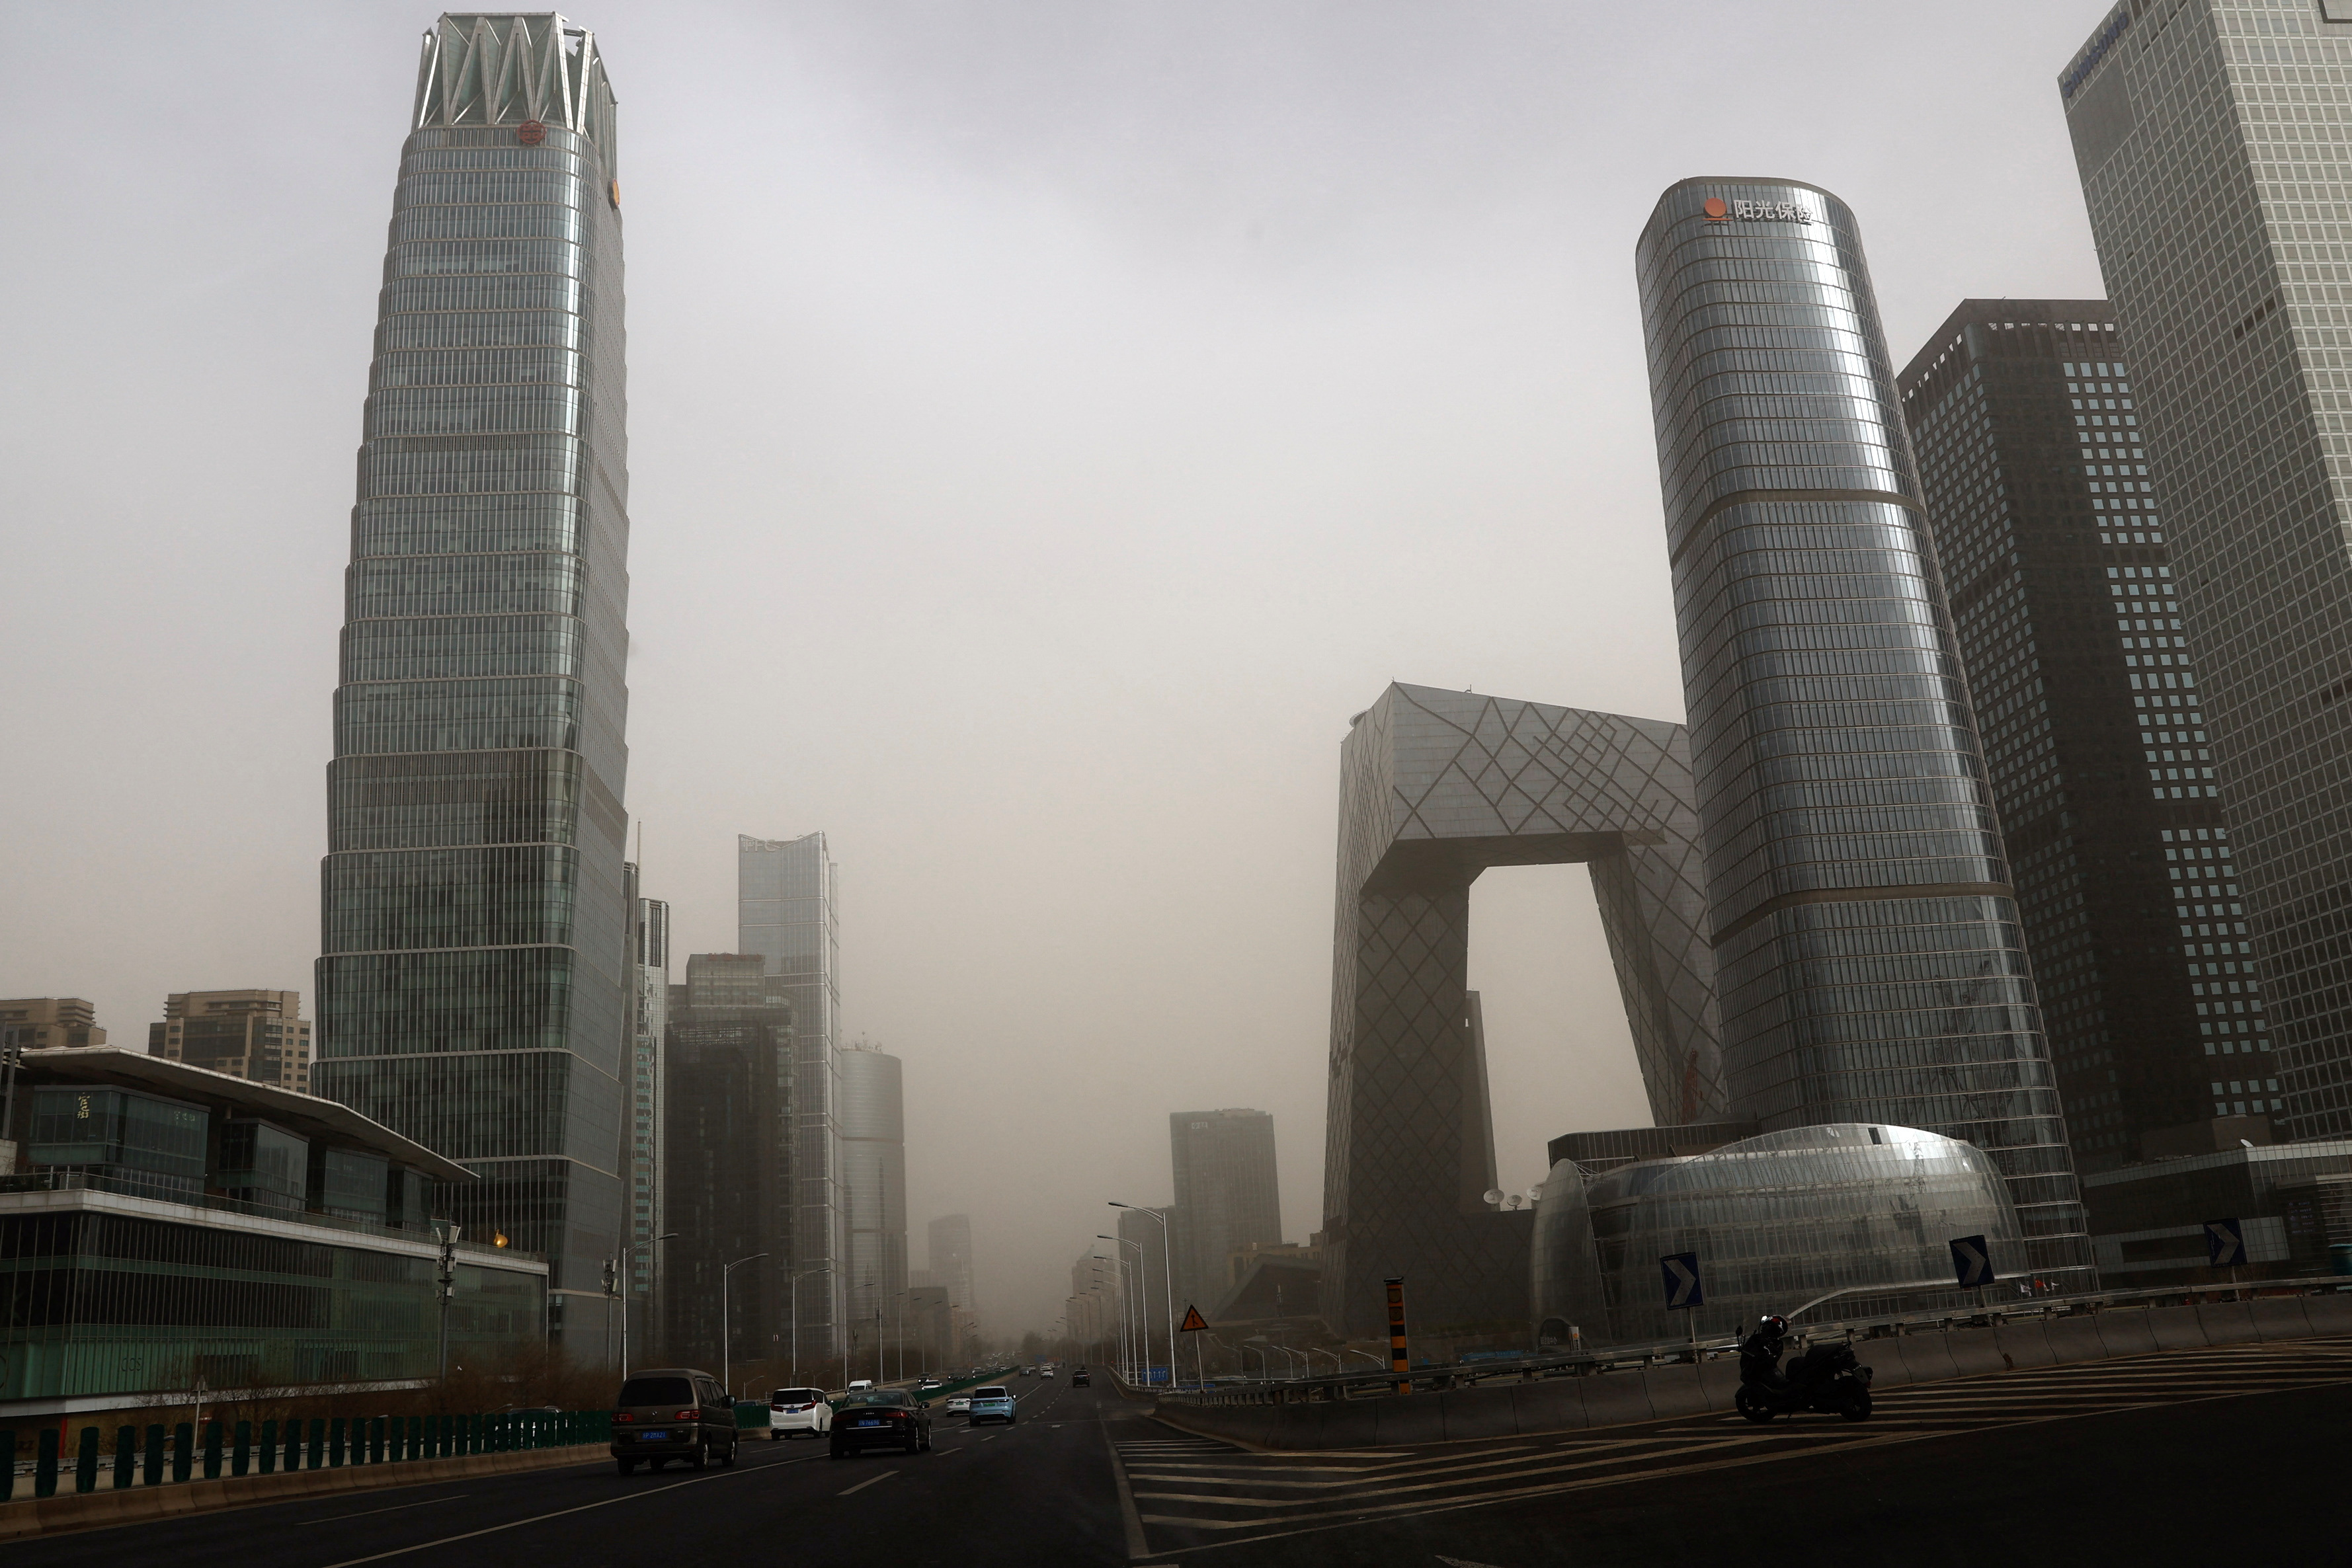 Una tormenta de arena contamina Beijing: la calidad del aire bajó a un nivel considerado muy peligroso para la salud